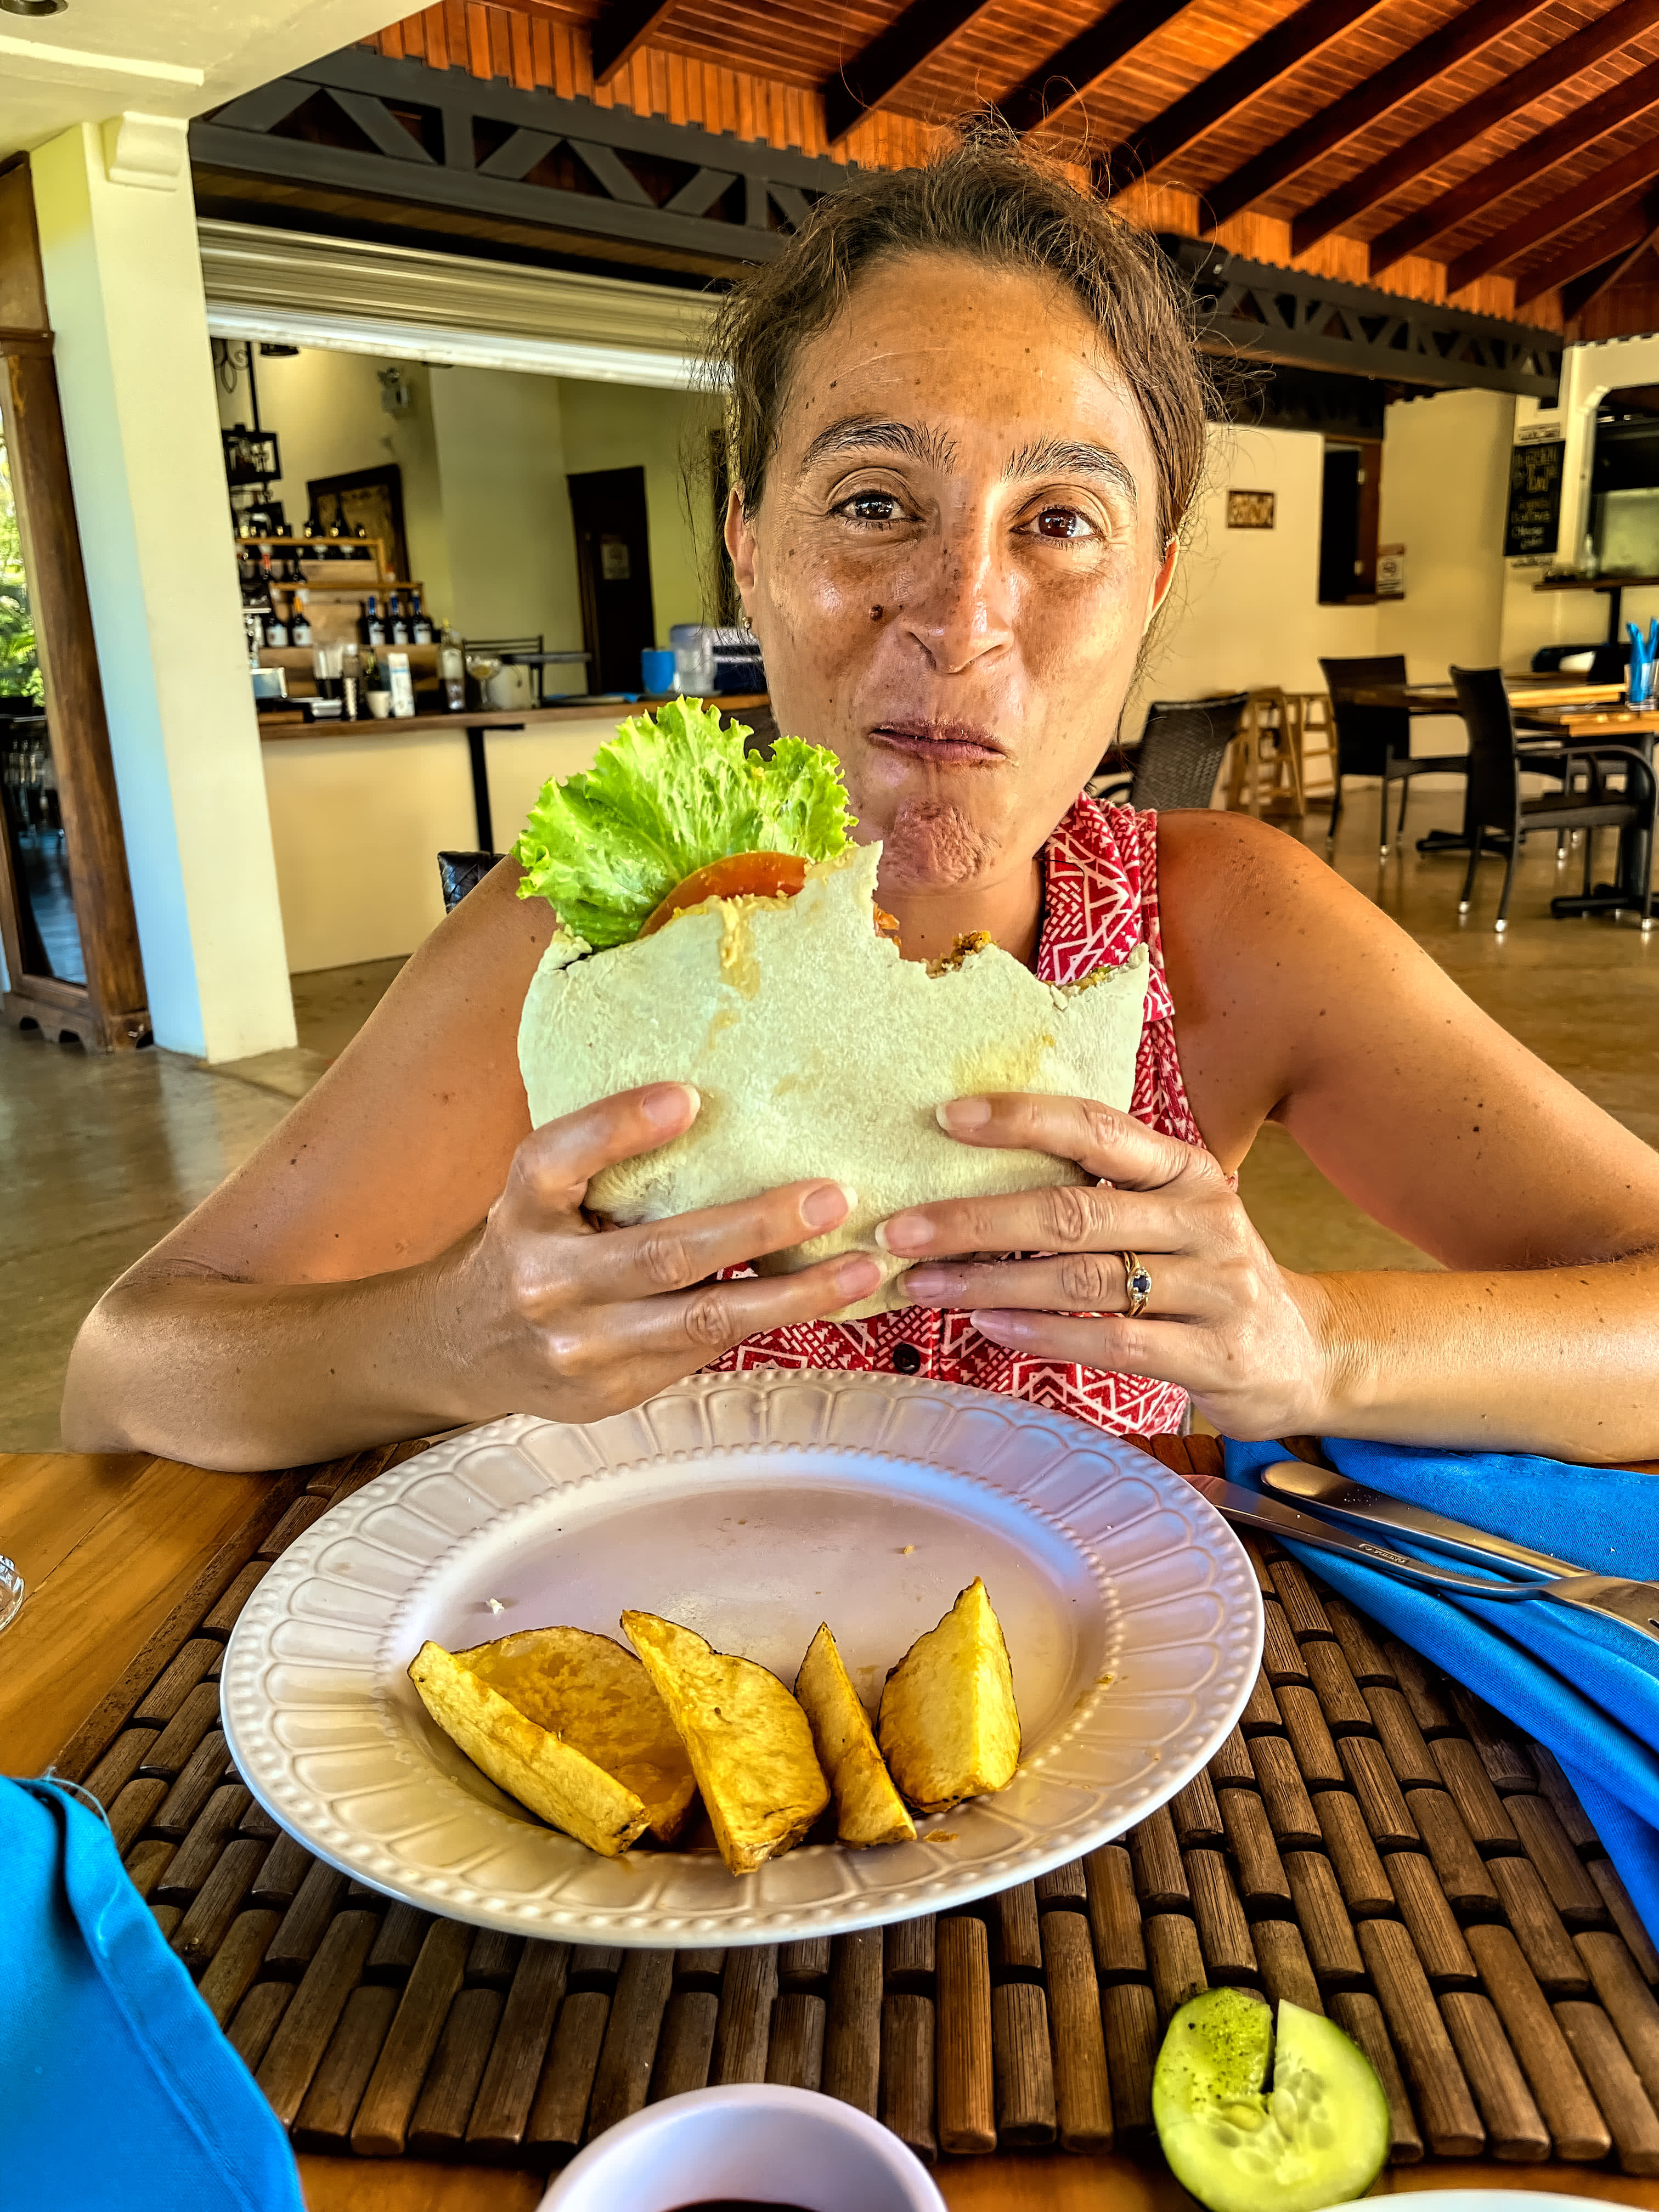 Maria enjoying a huge falafel sandwich